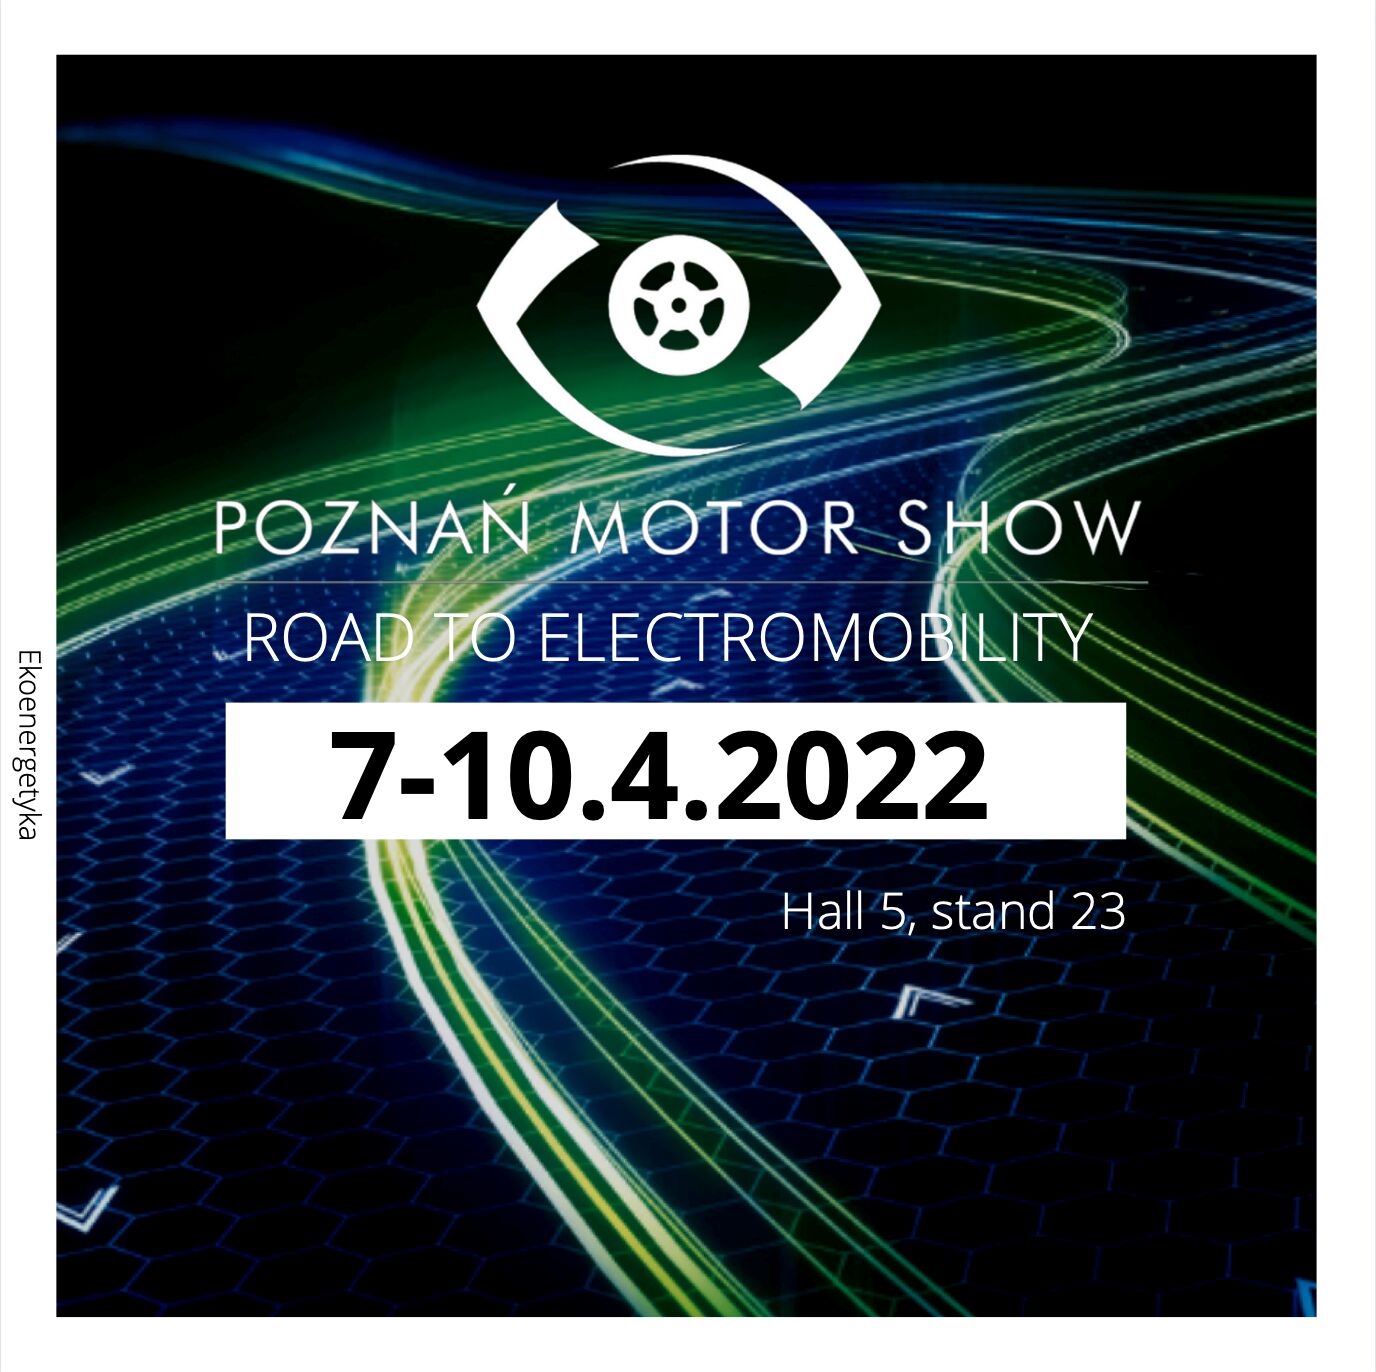 ekoenergetyka poznan motor show 2022, Ekoenergetyka